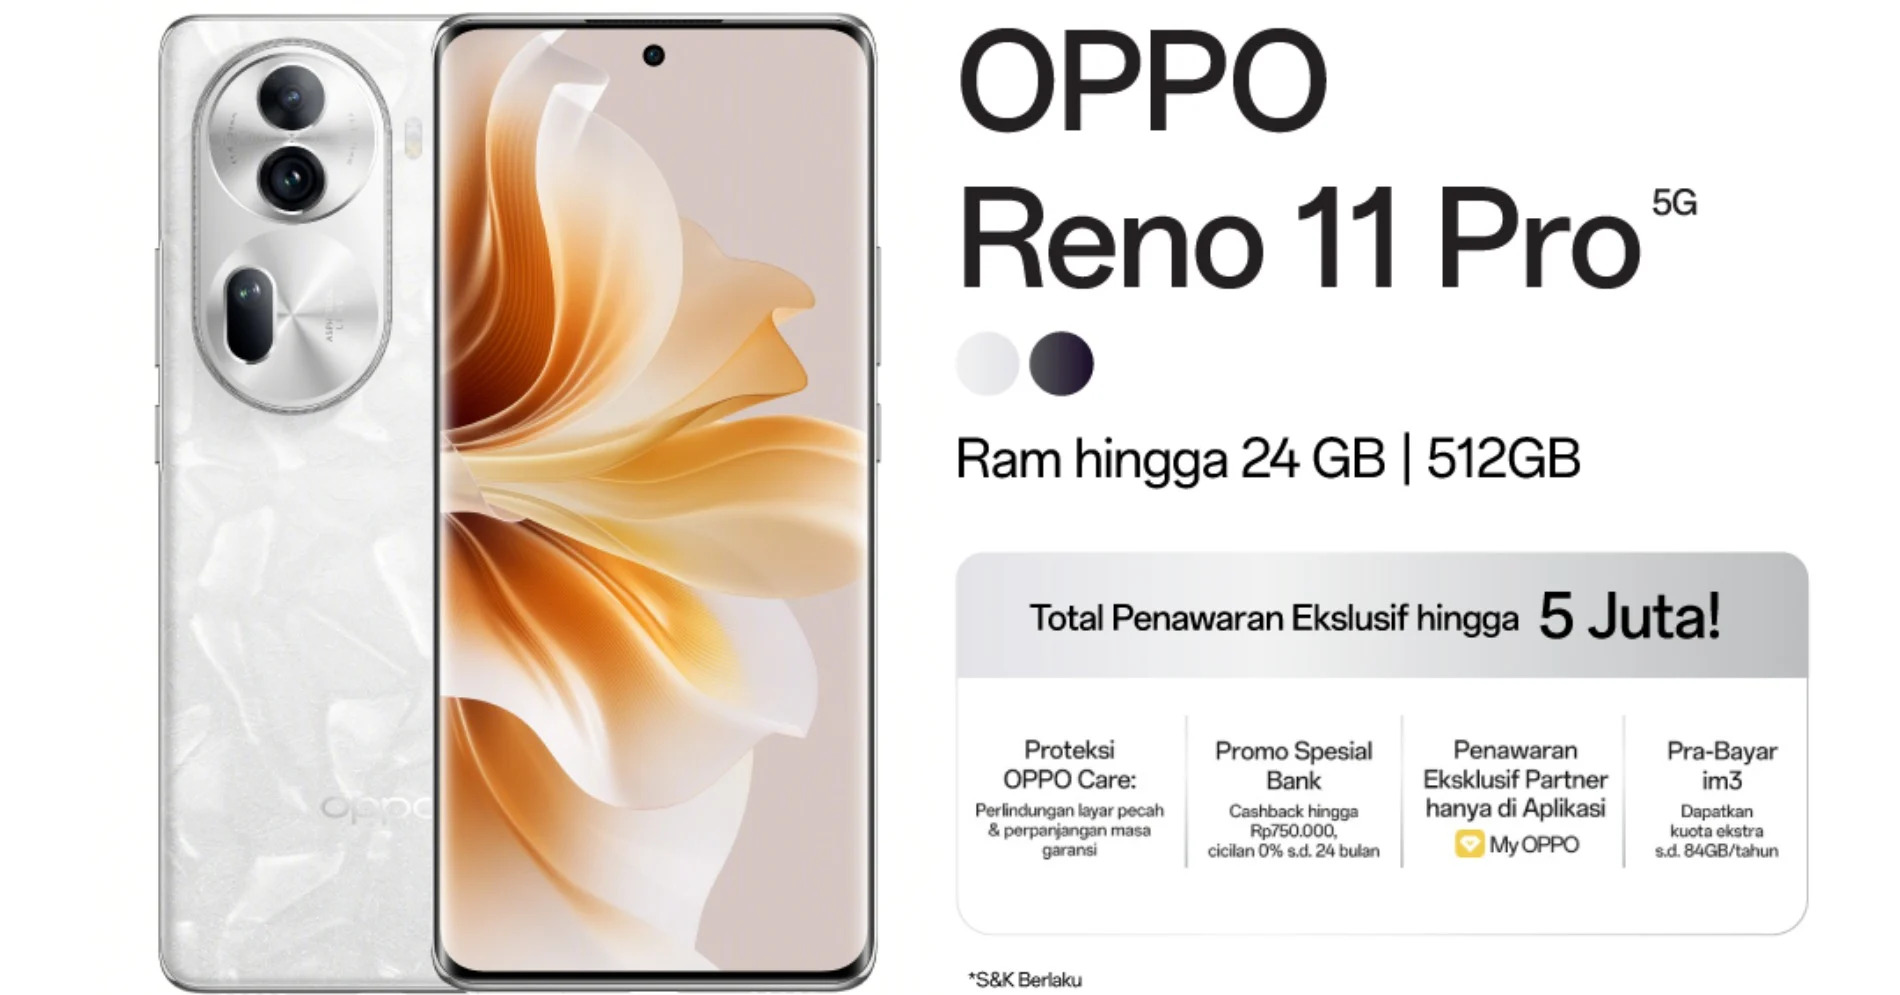  OPPO Reno 11 5G dan OPPO Reno 11 Pro 5G Rilis Serentak,  Ini Perbedaan dan Spesifikasi Si Kembar